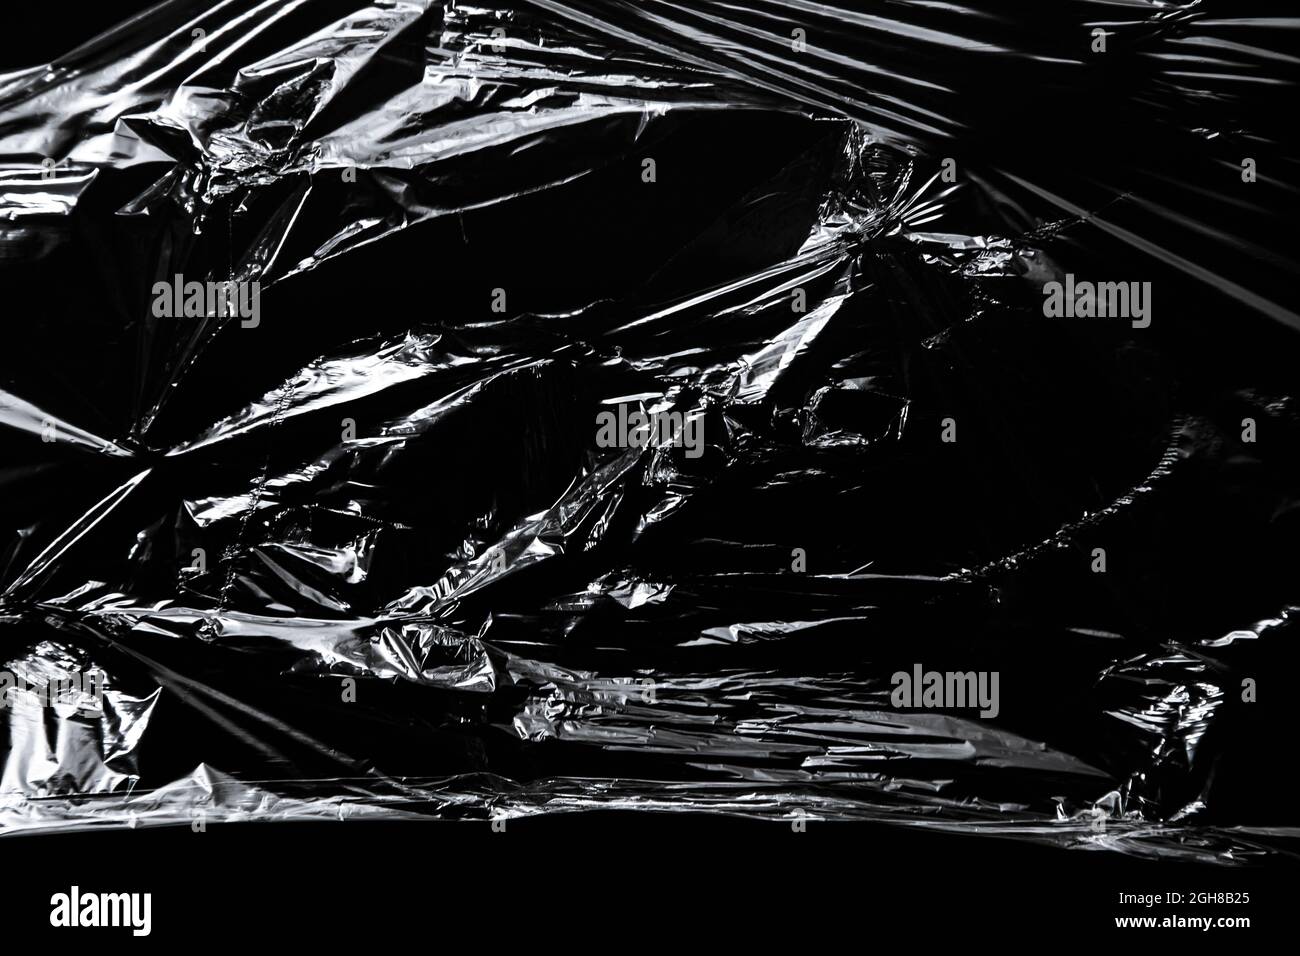 Photo of the polyethylene surface on black background Stock Photo